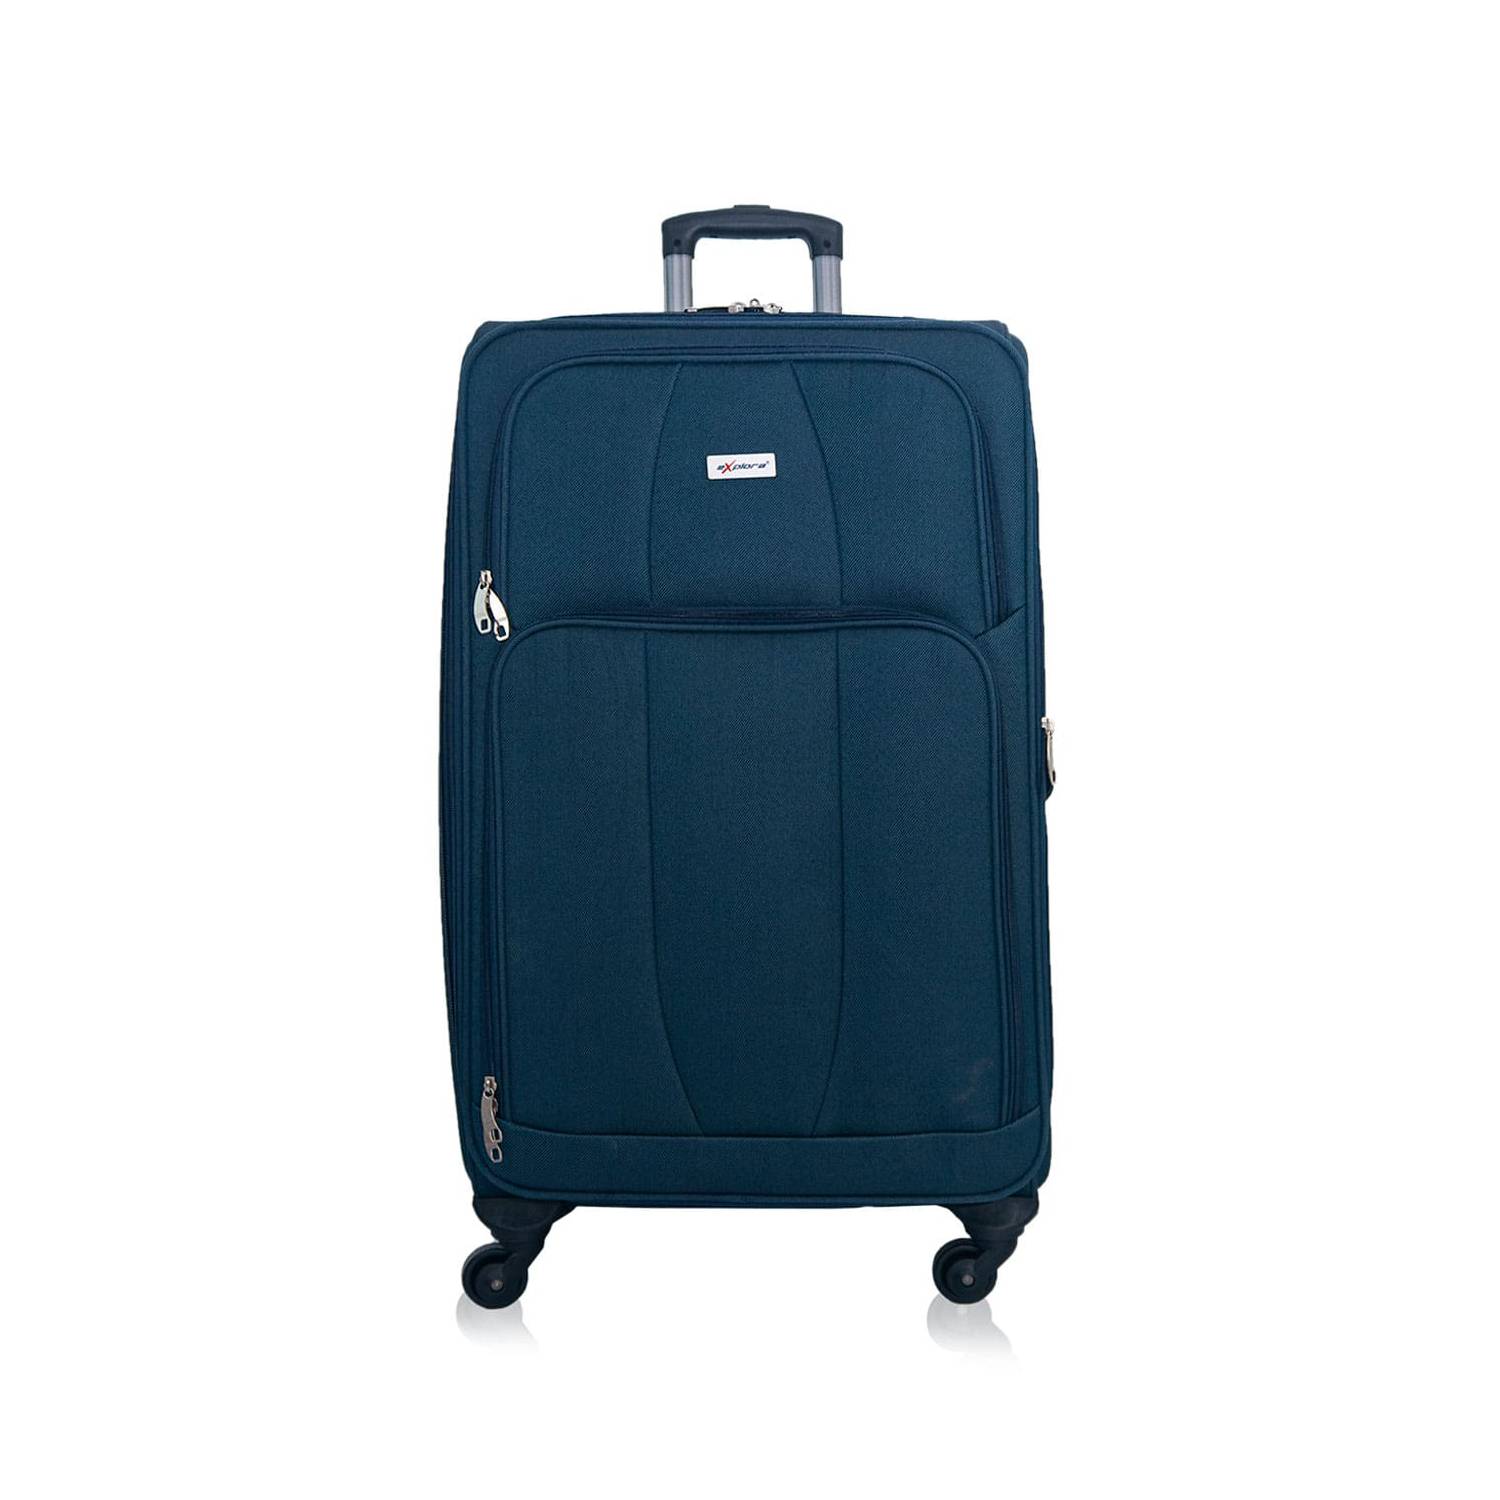 maleta mediana loves - Azul y mora - Tienda de maletas bolsos y